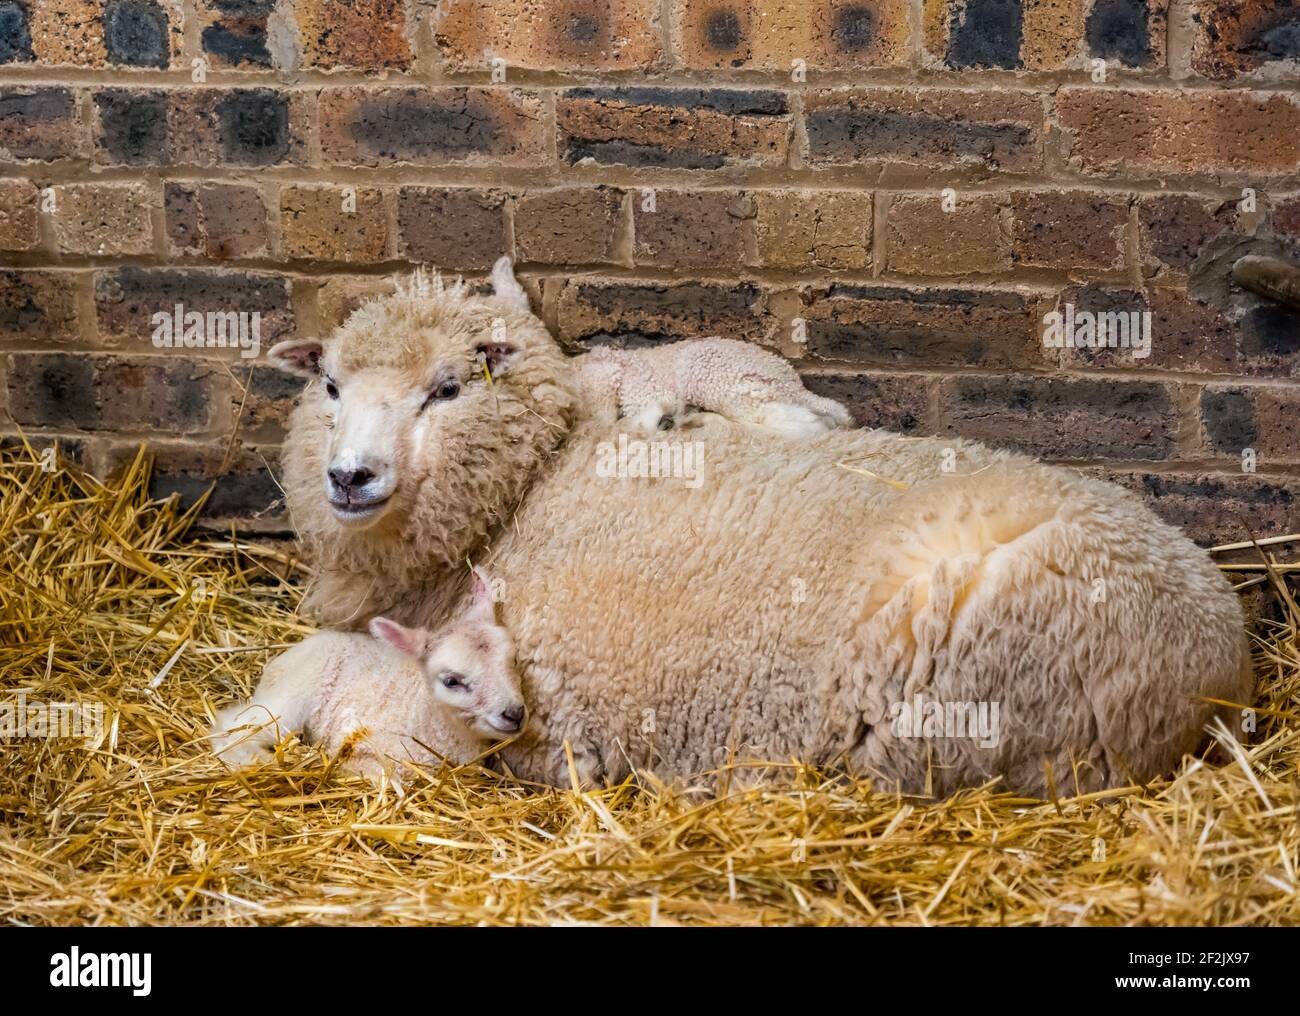 Mère Shetland brebis brebis avec nouveau-nés jumeaux d'agneau dormant dans la grange, East Lothian, Écosse, Royaume-Uni Banque D'Images